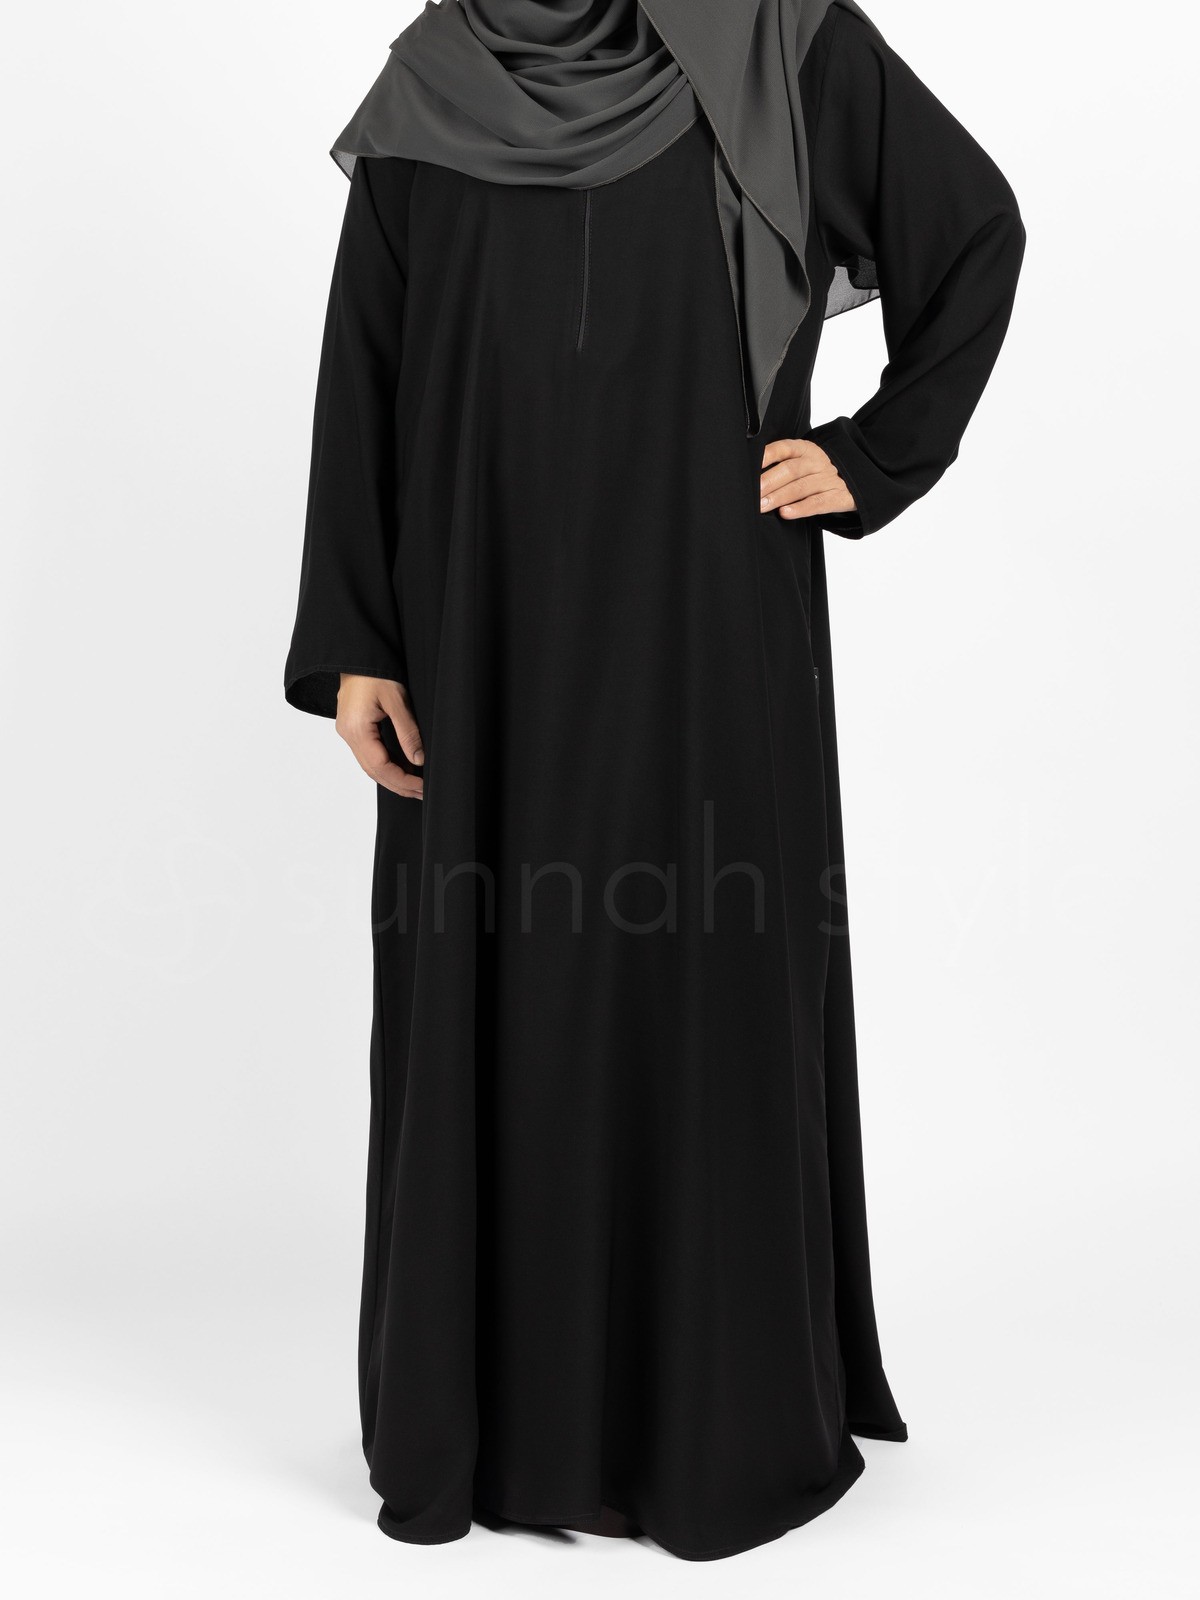 Sunnah Style - Plain Closed Abaya (Black)